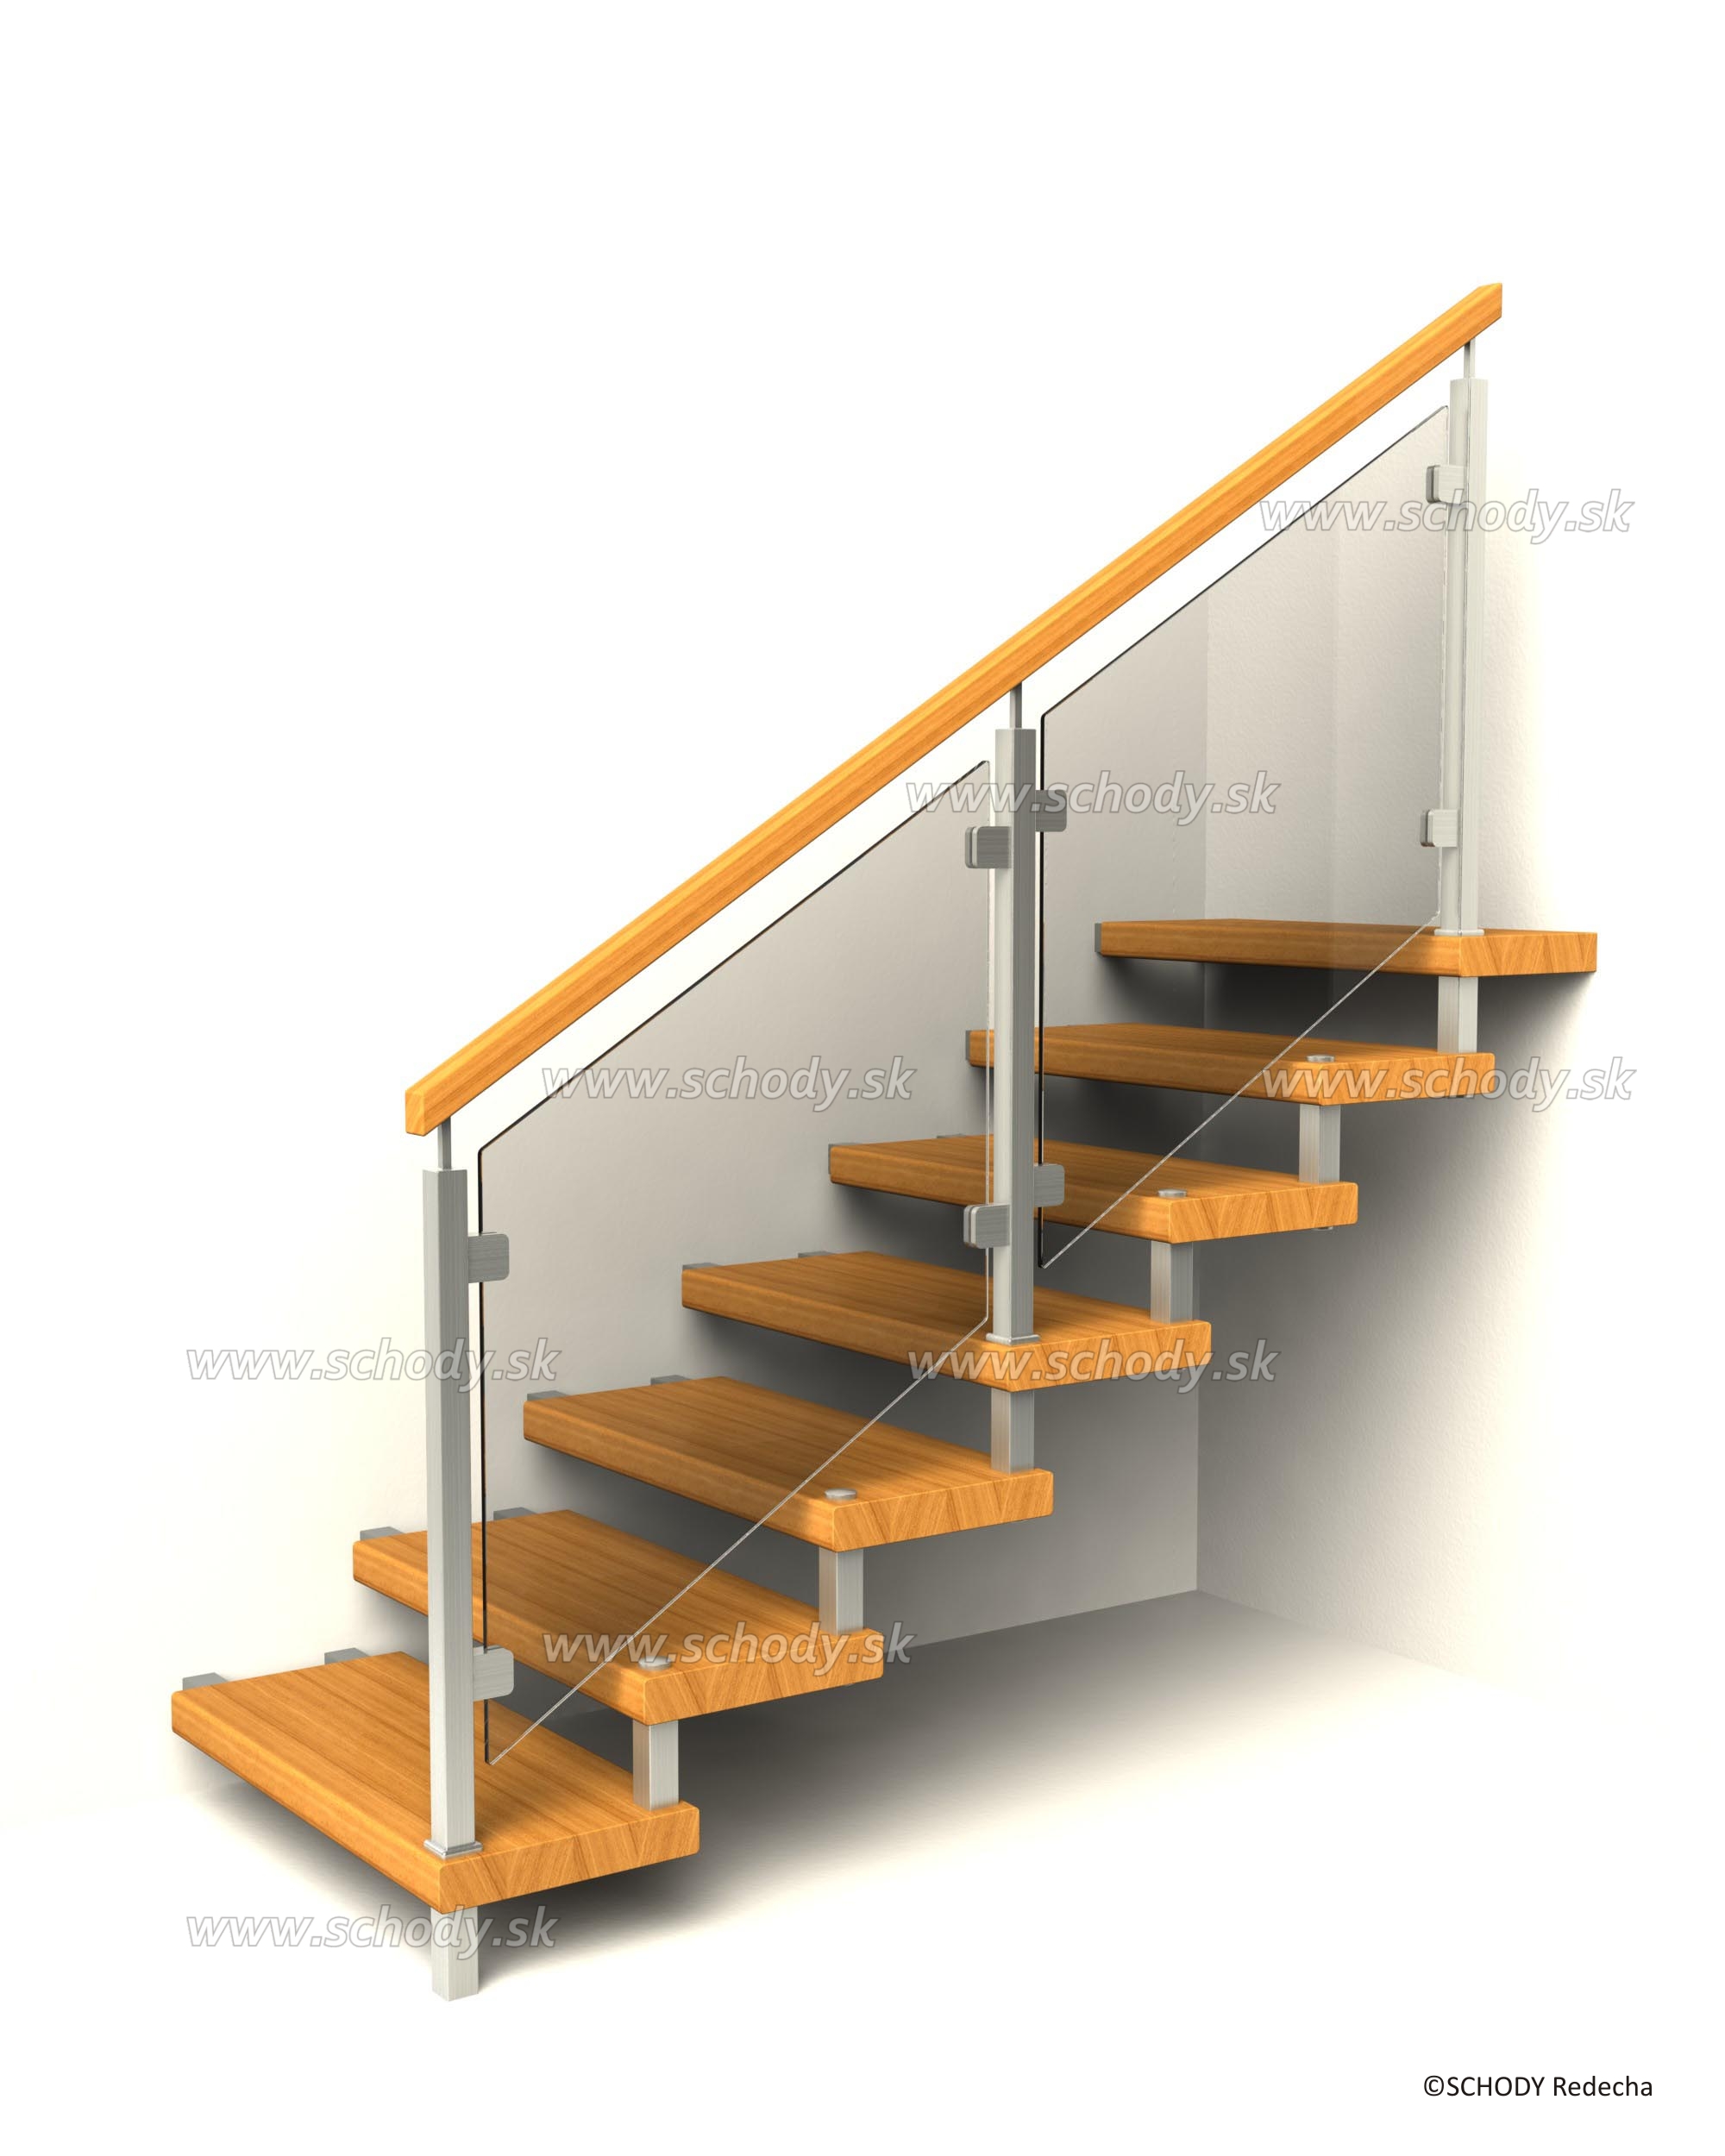 svornikova schodiste schody VIII21J6